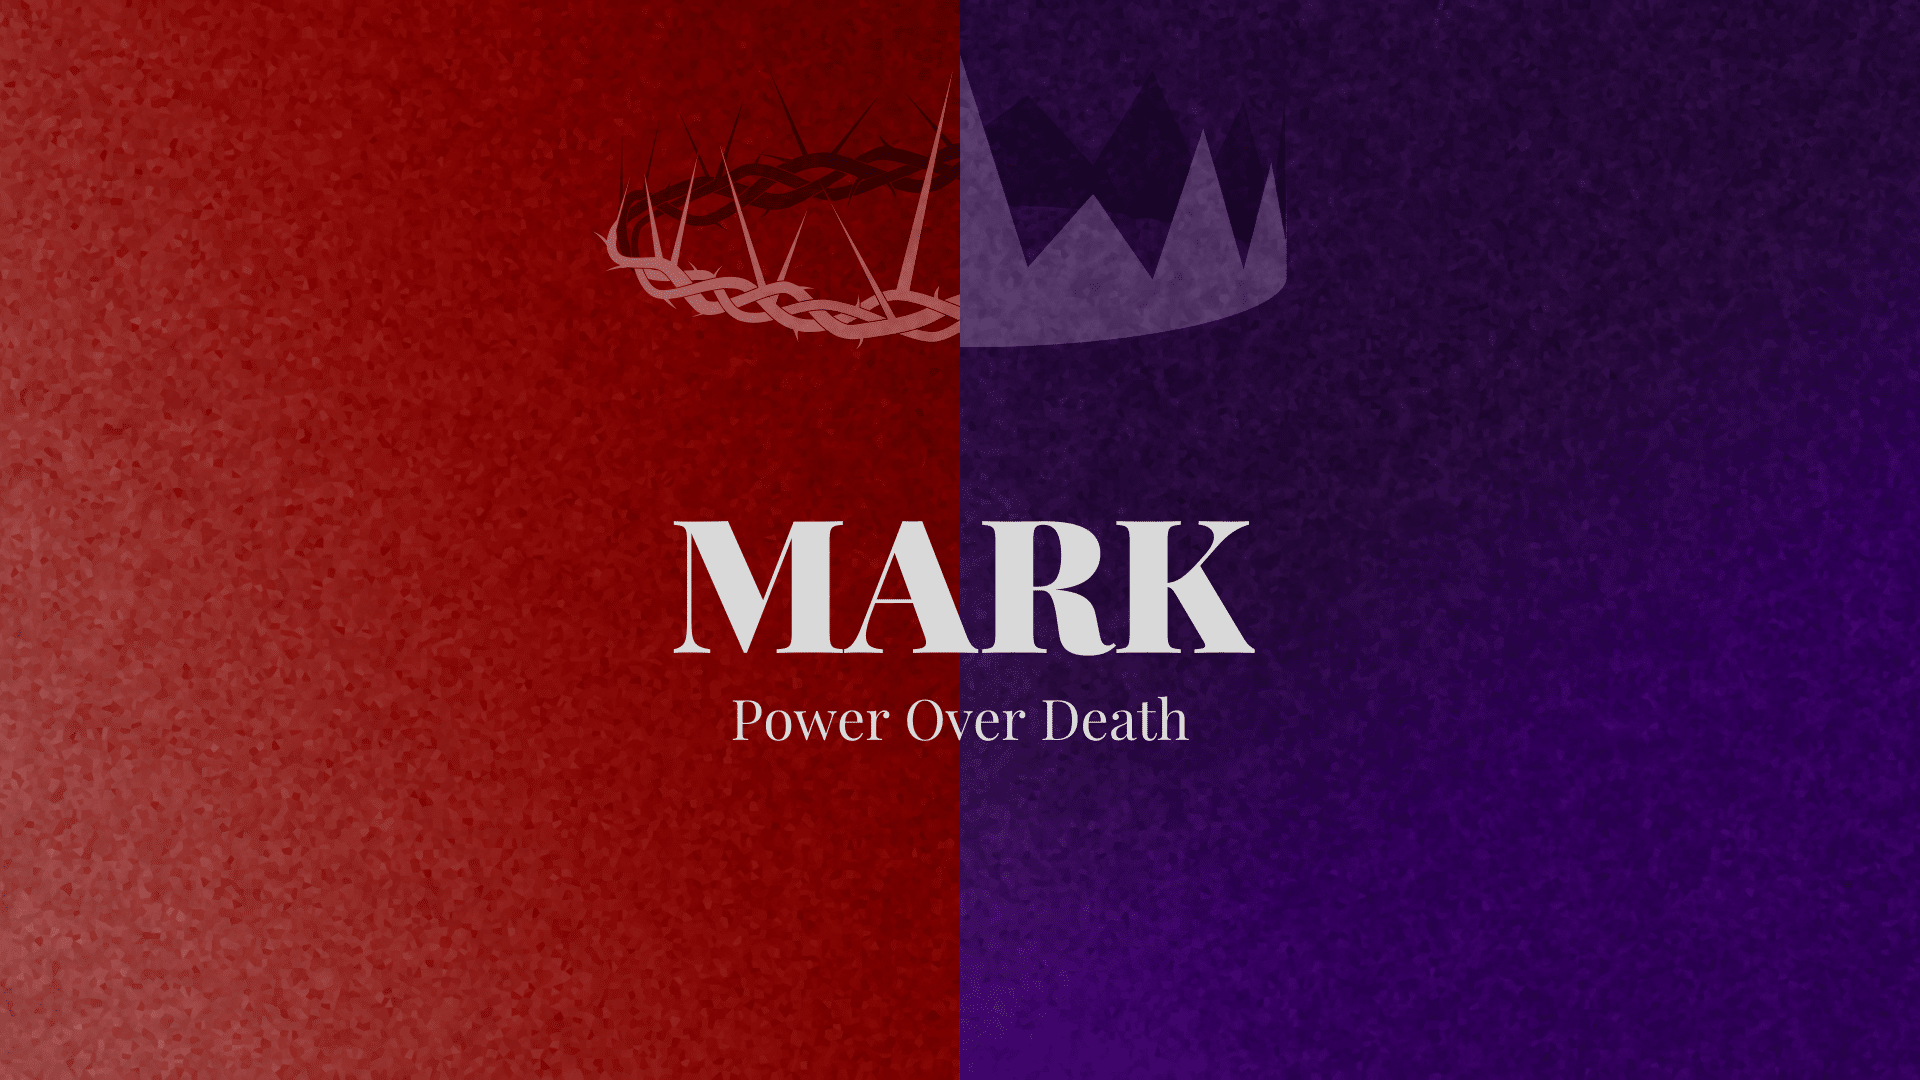 Mark: Power Over Death